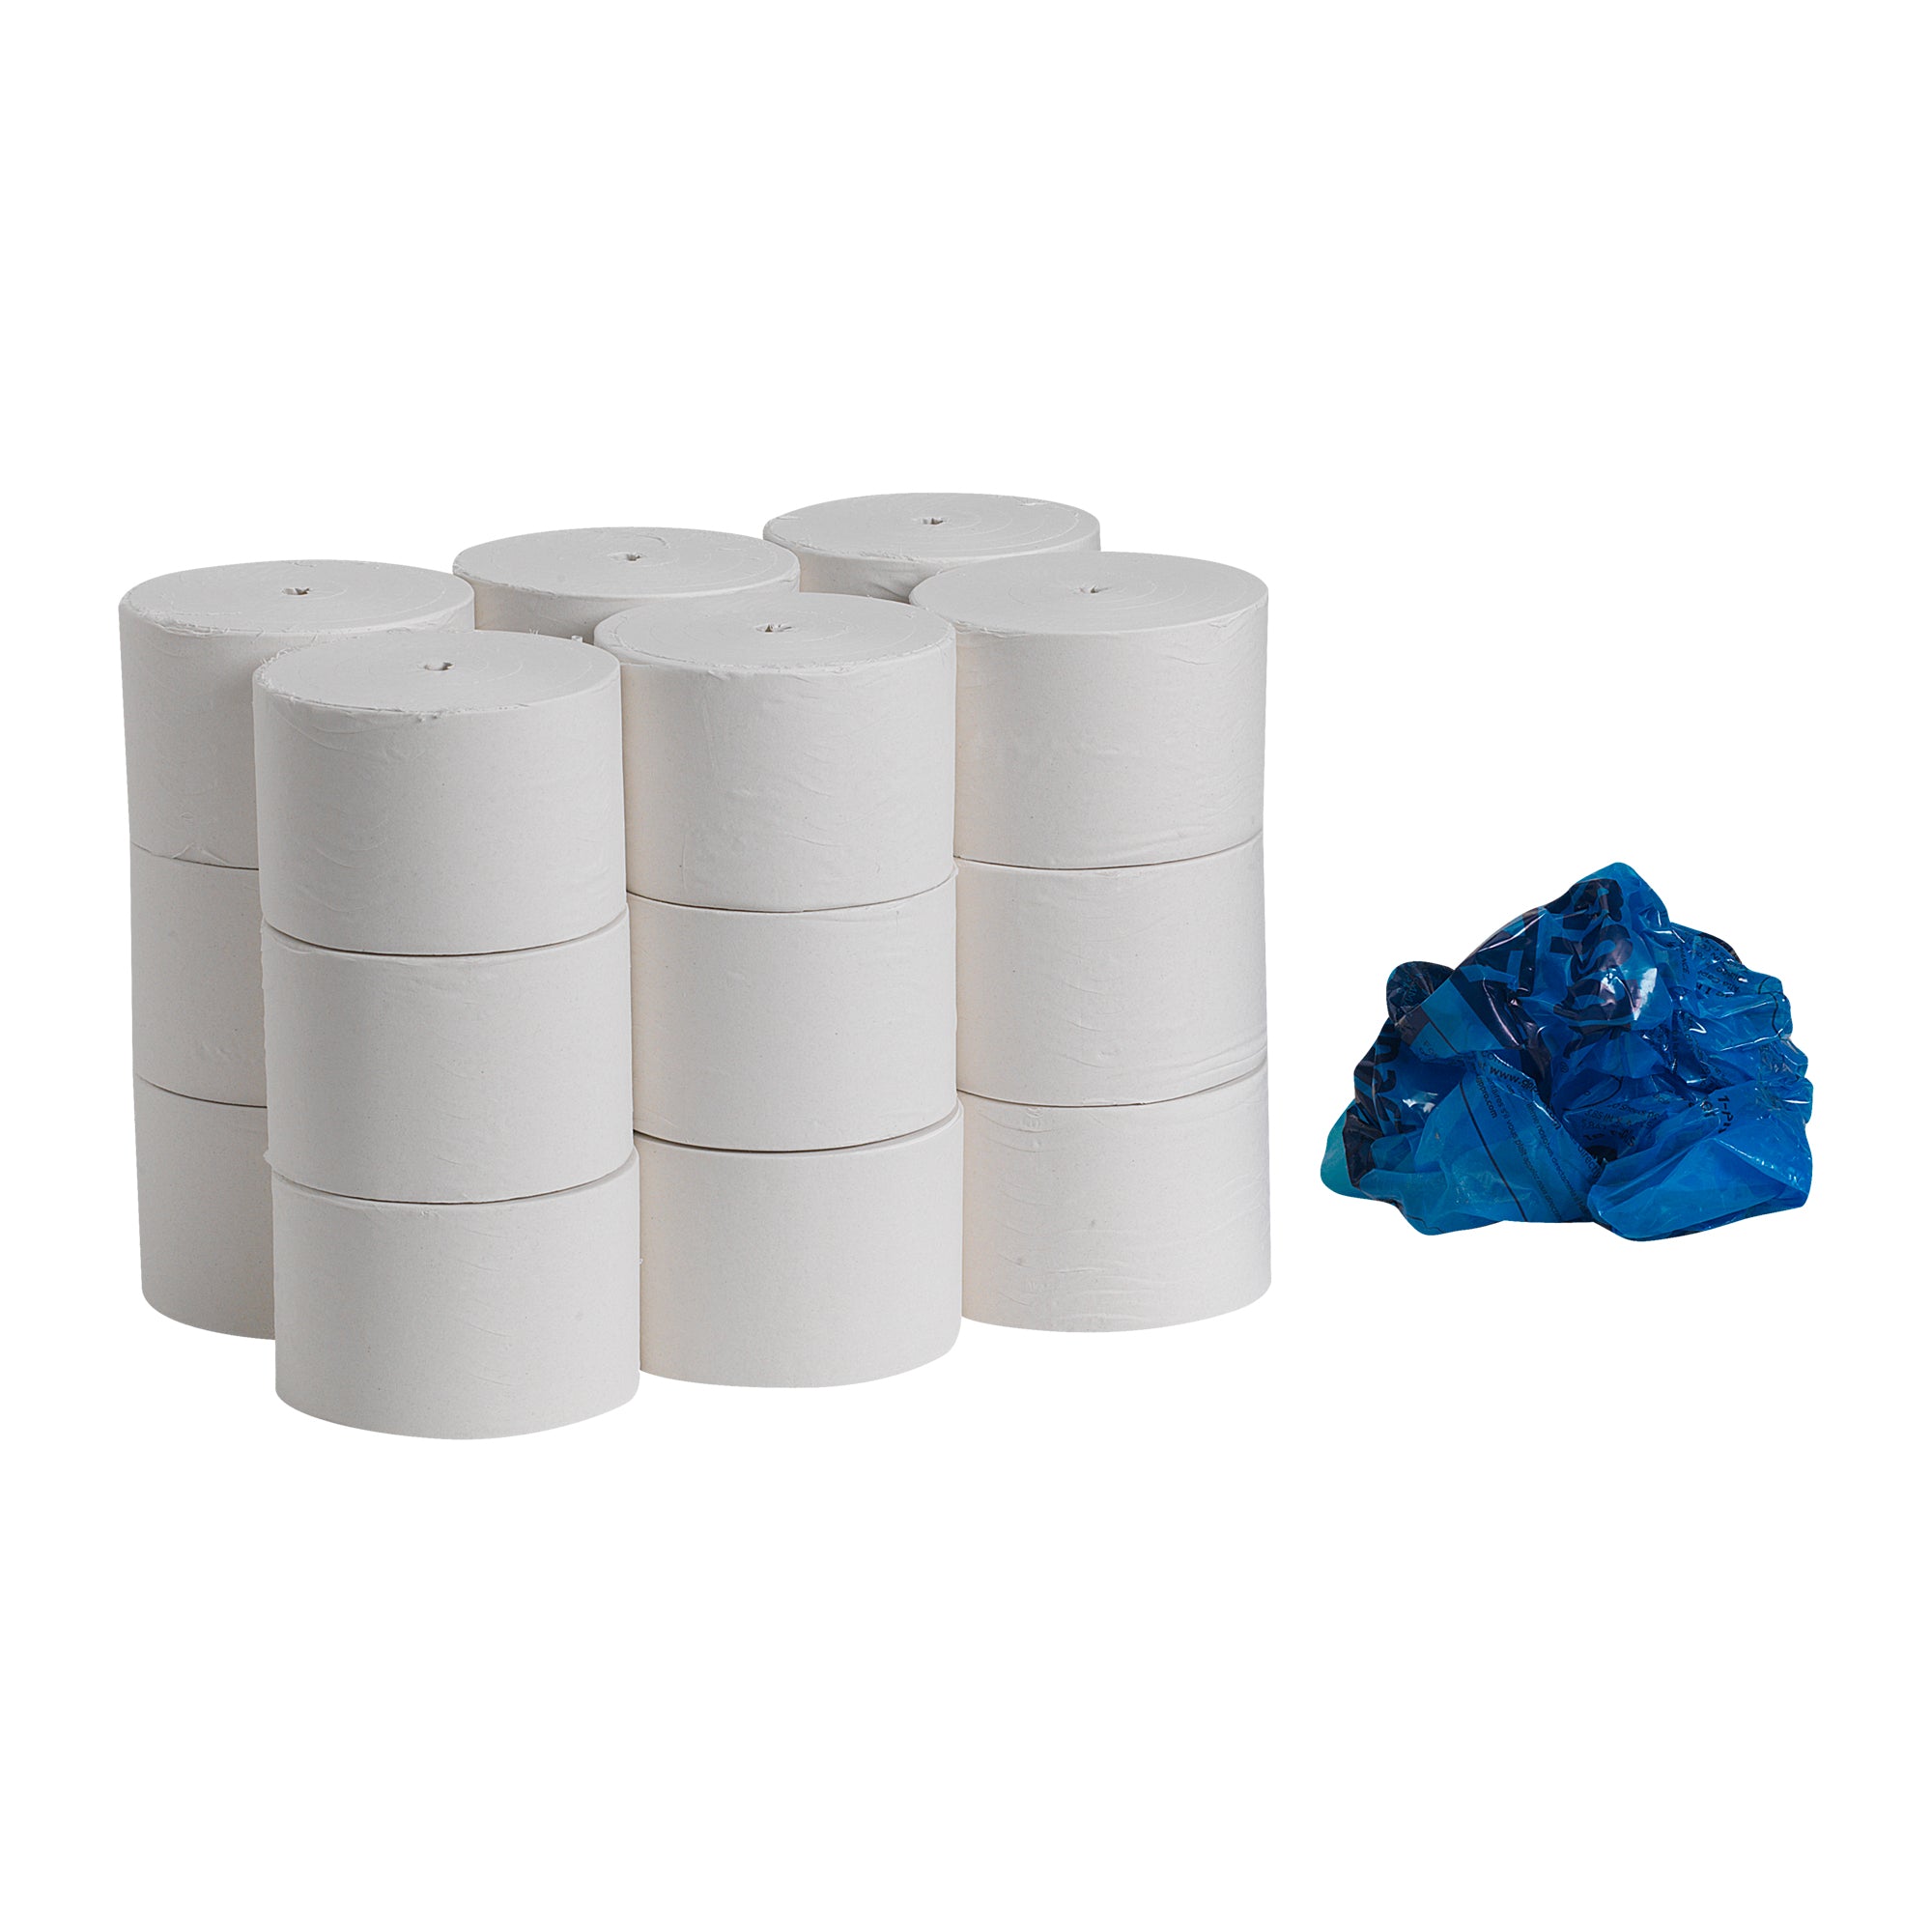 נייר טואלט ממוחזר חד שכבתי Compact® ללא ליבות, לבן, (18 גלילים של 304.80 מטר סהכ 5486.40 מטר) 54000 גליונות למארז